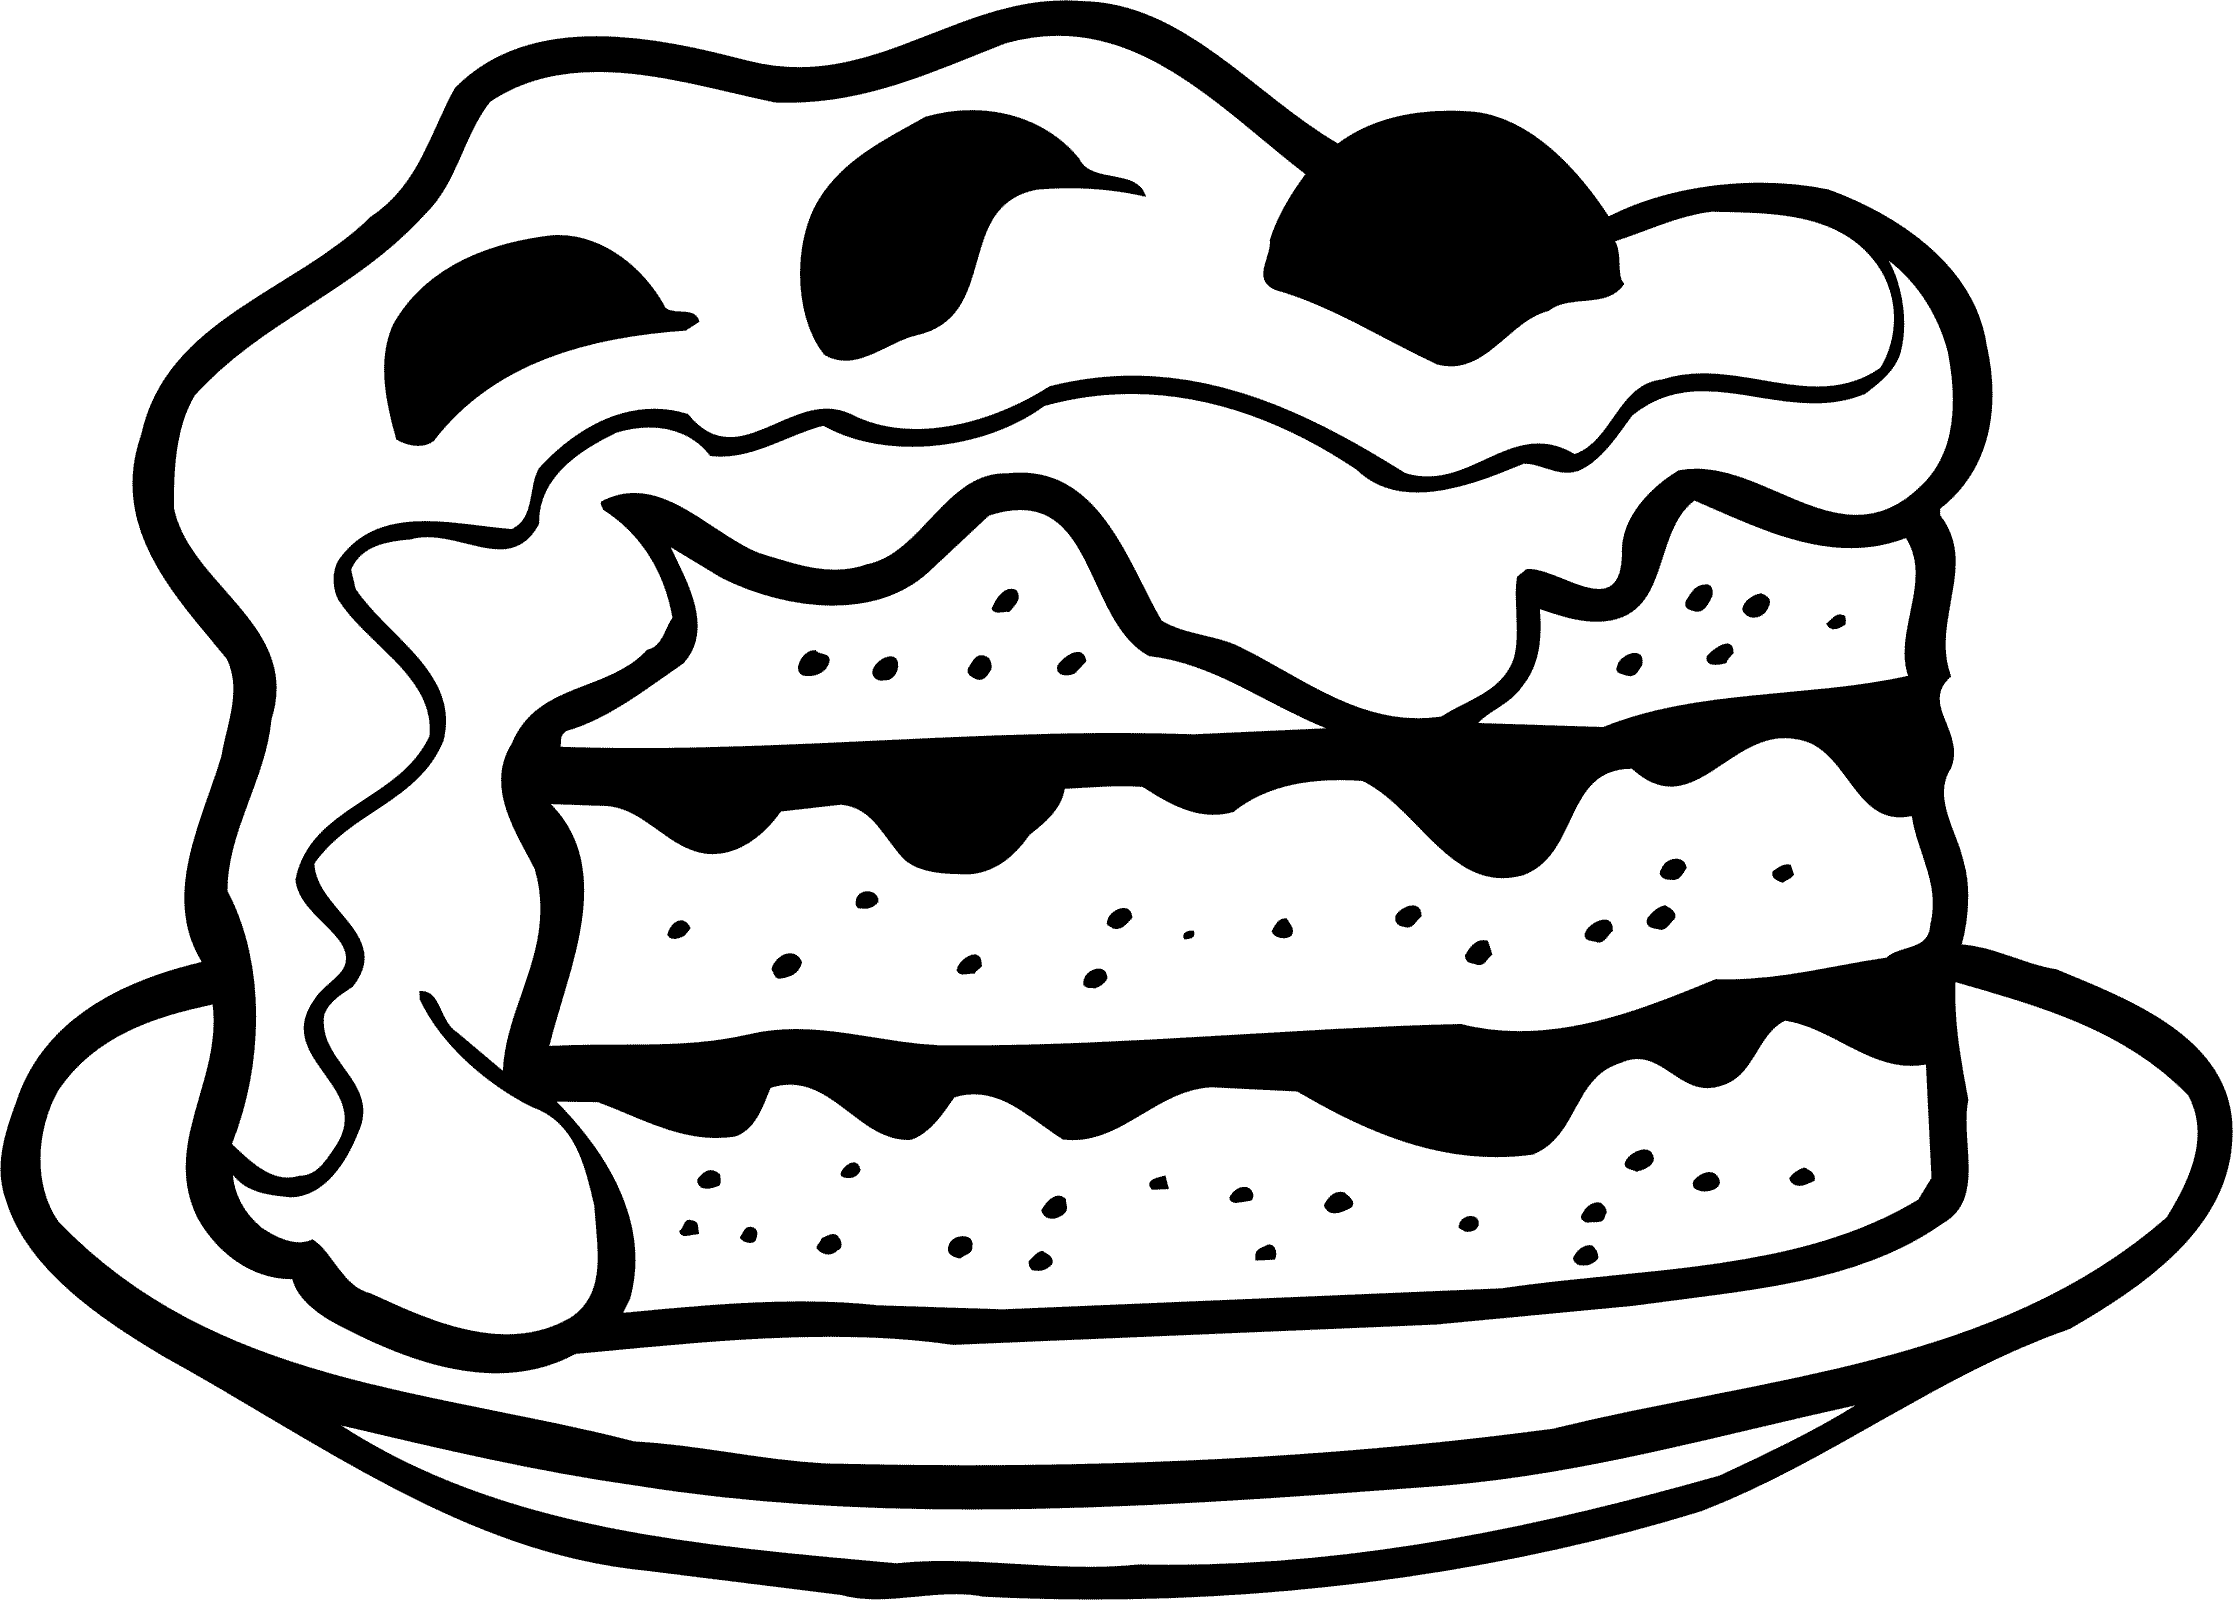 Розмальовки Торти та тістечка  Великий шматок, торт, з кремом, полуничний, розфарбування